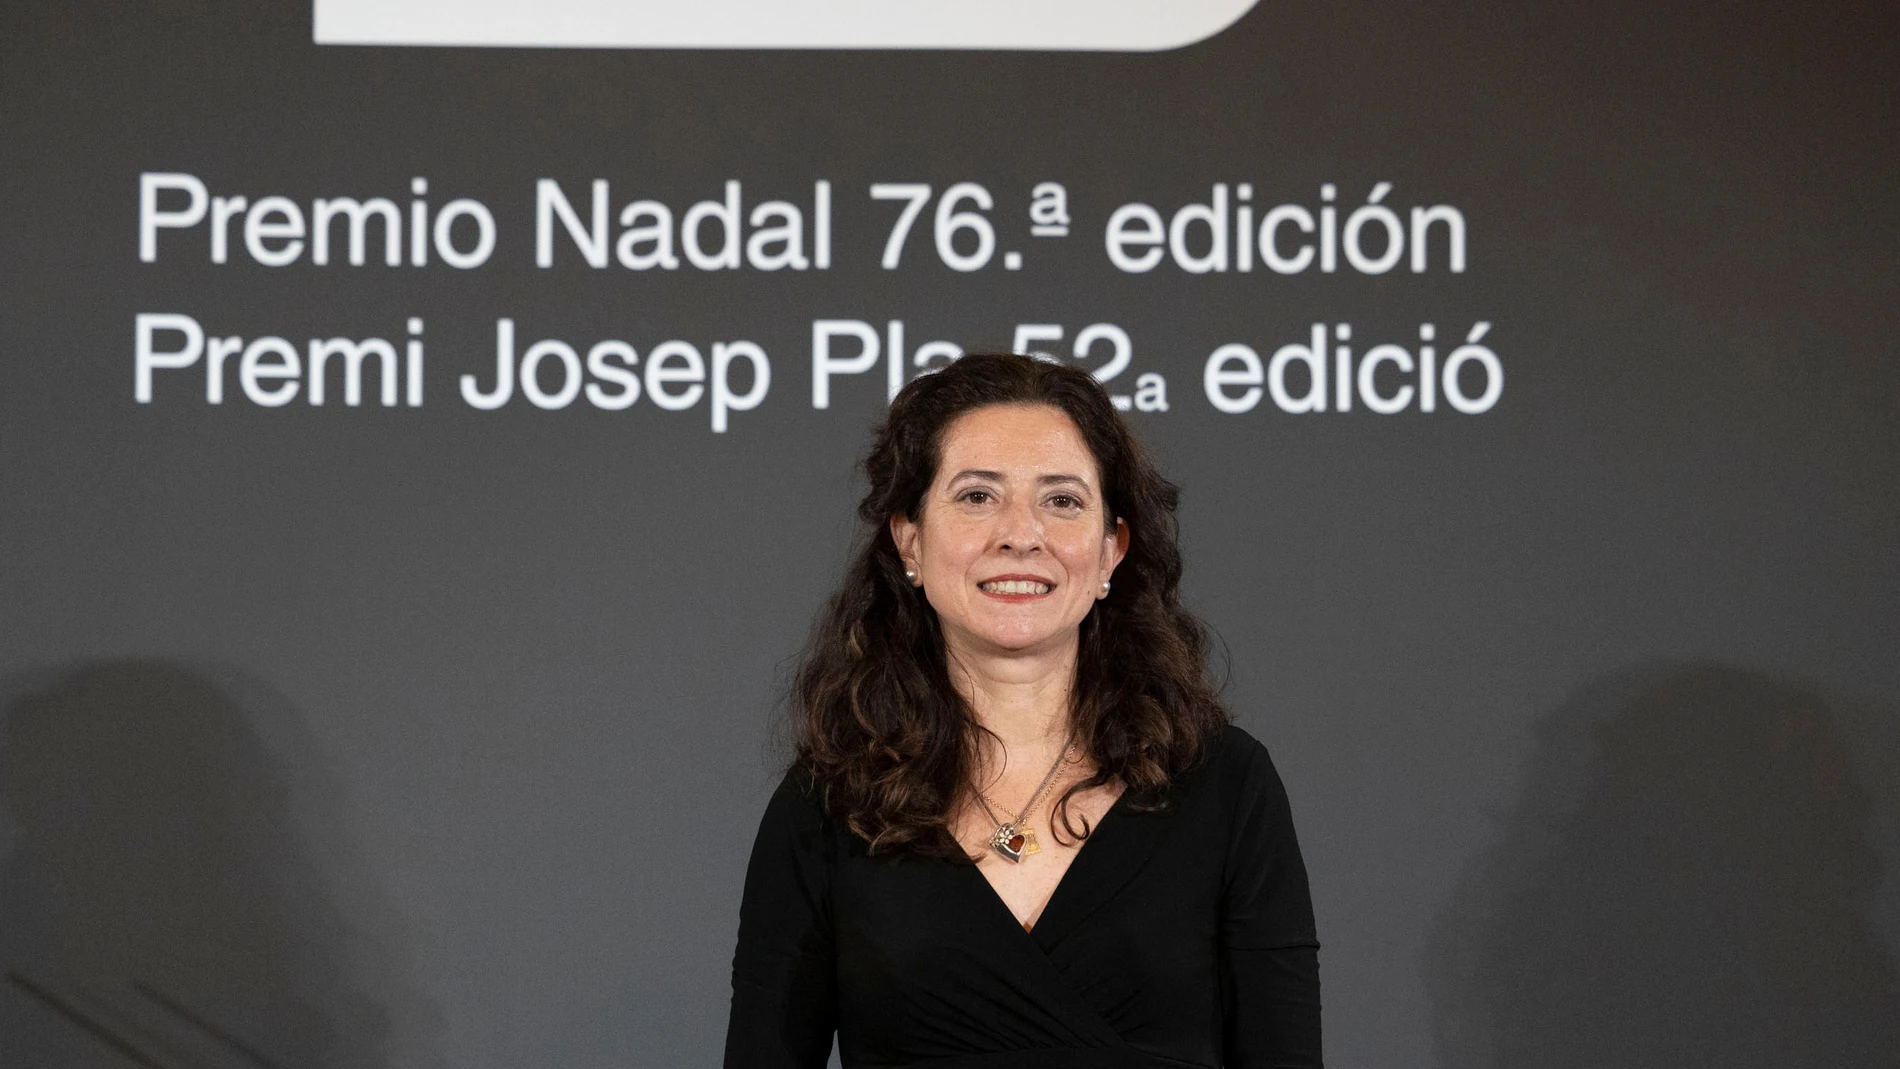 La escritora madrileña Ana Merino ganadora del Premio Nadal con su primera novela, "El mapa de los afectos". Miquel González/Shooting.